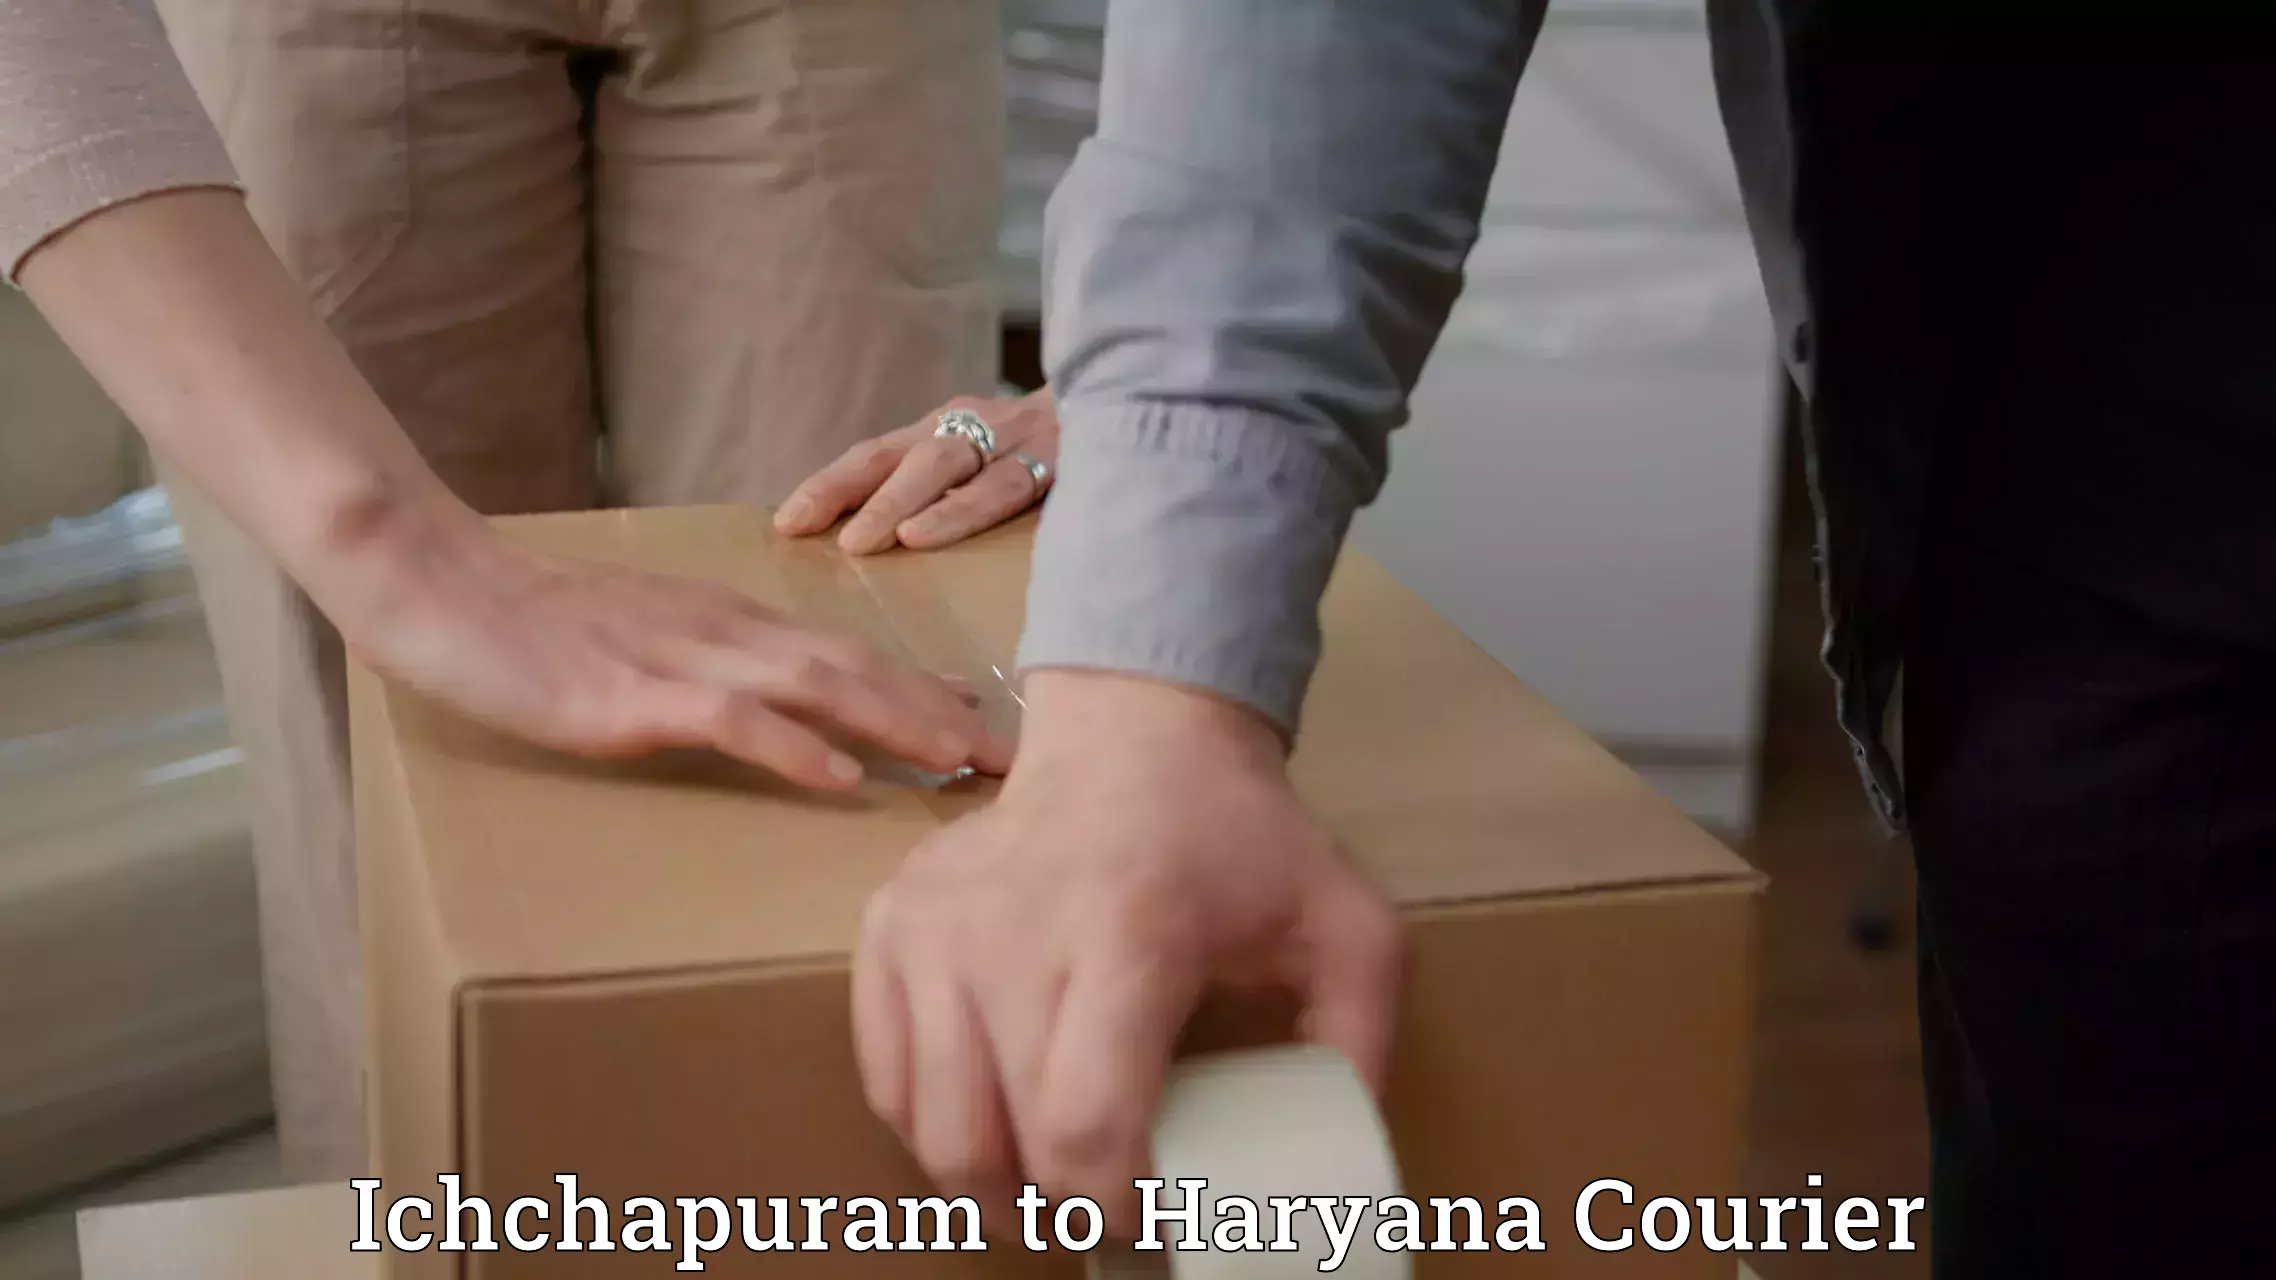 Nationwide delivery network Ichchapuram to Kurukshetra